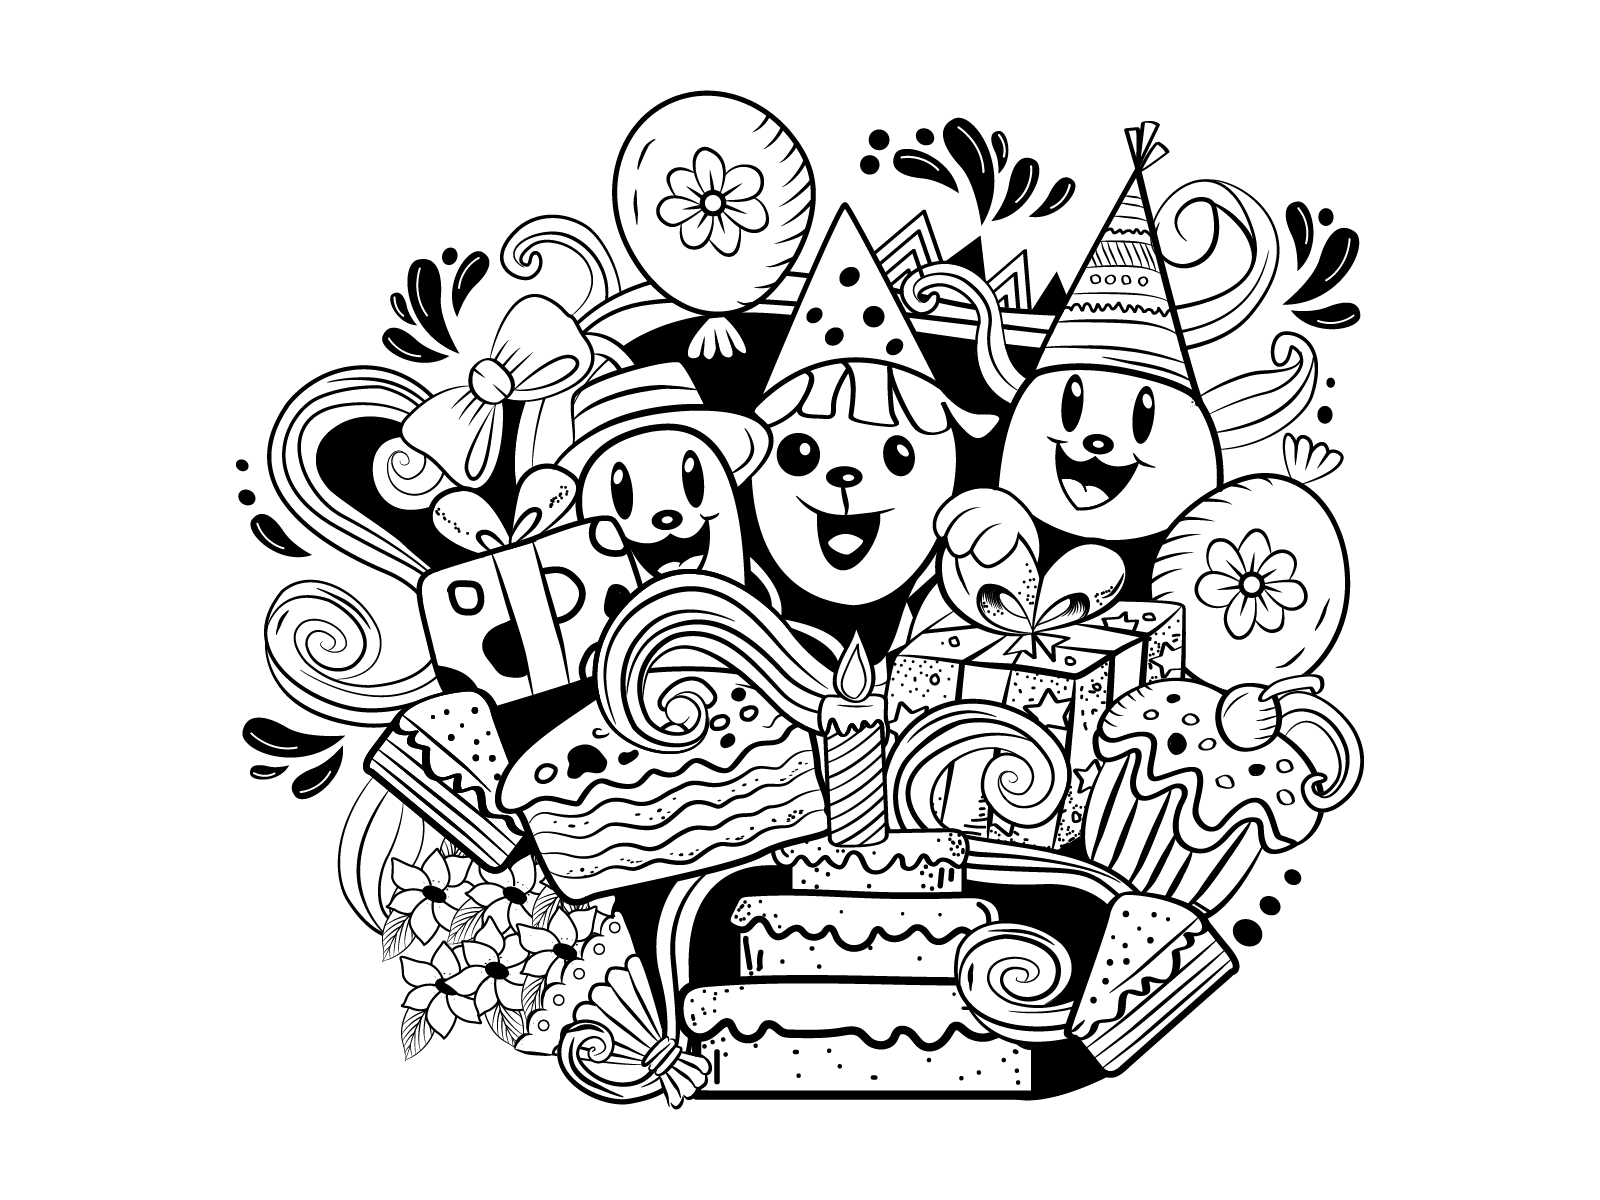 Share 84+ birthday cake doodle art latest - awesomeenglish.edu.vn